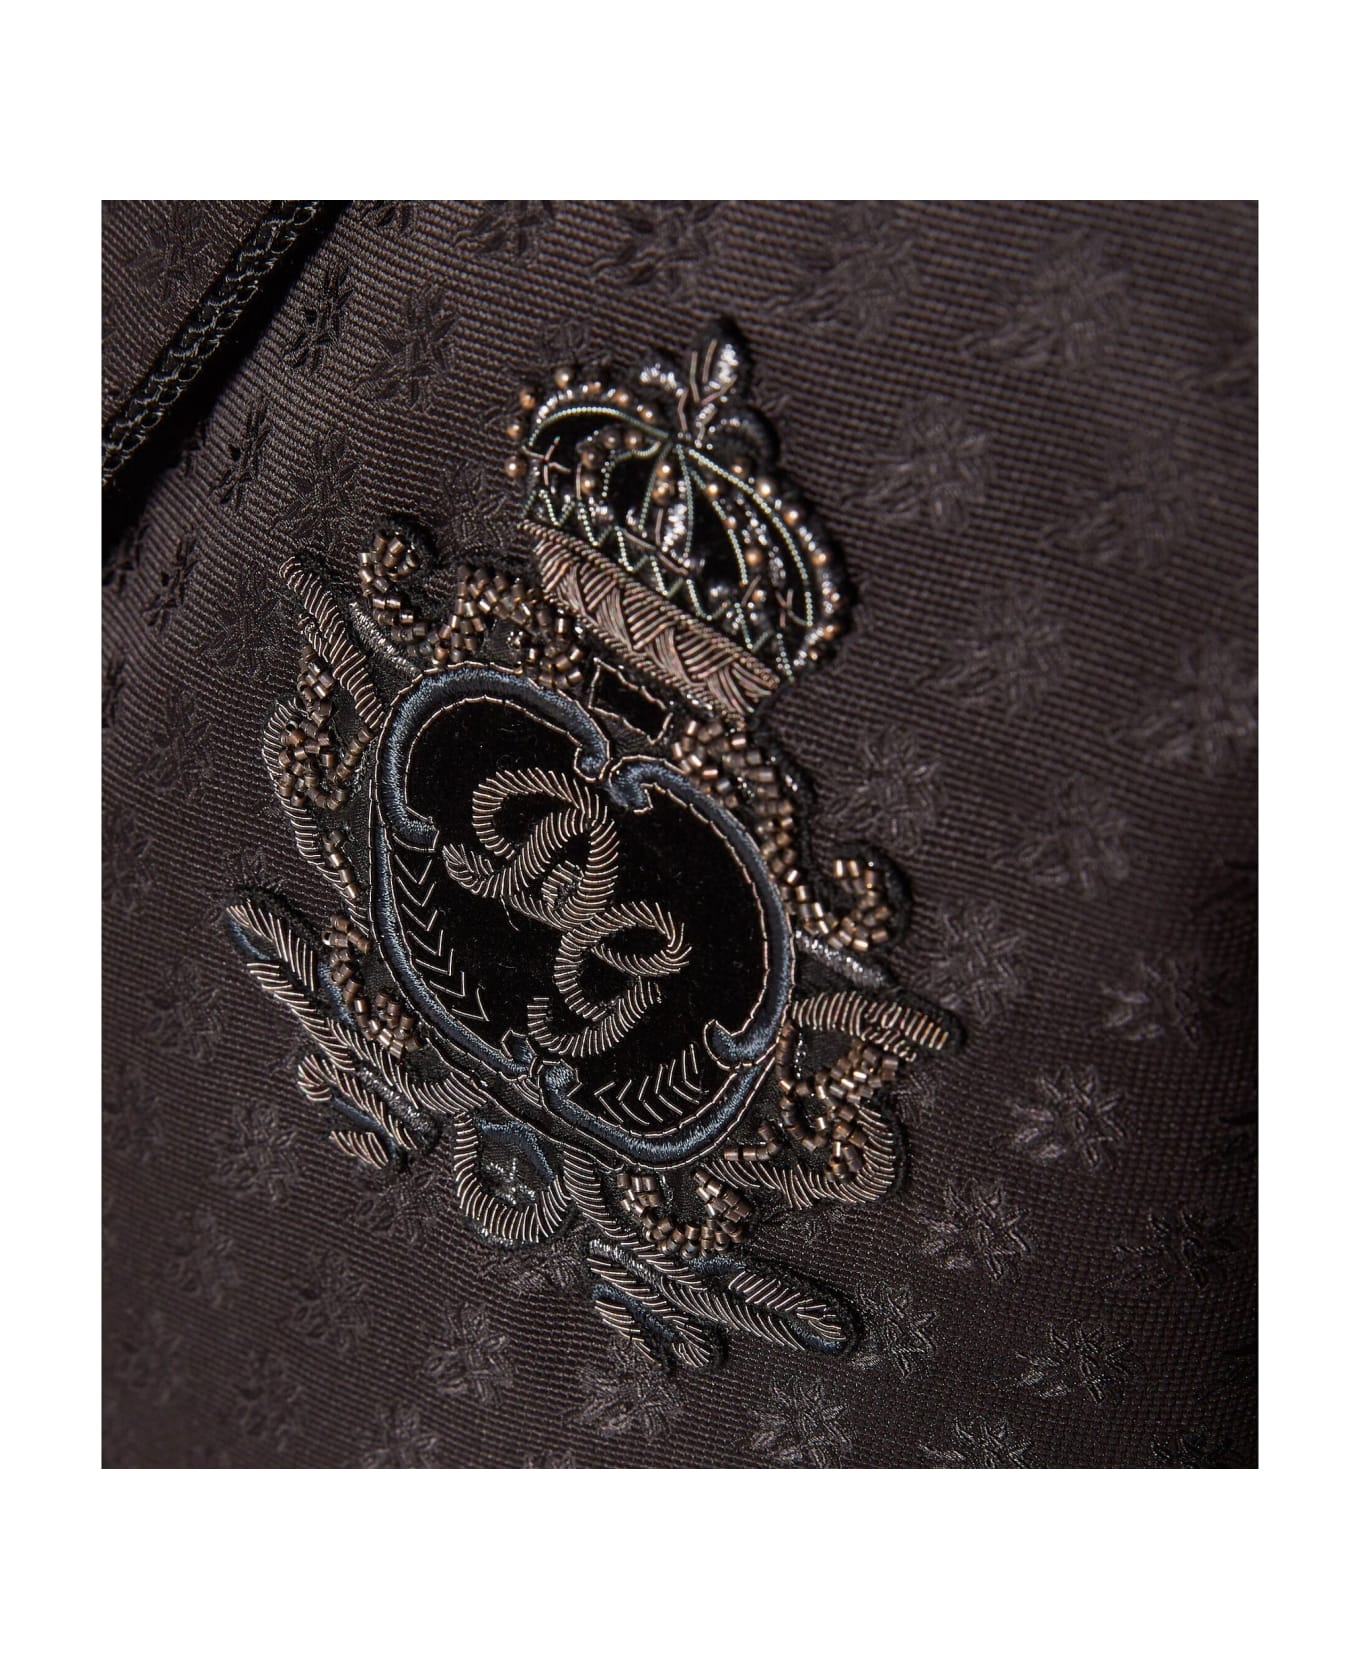 Dolce & Gabbana Jacquard Tuxedo Jacket - Black